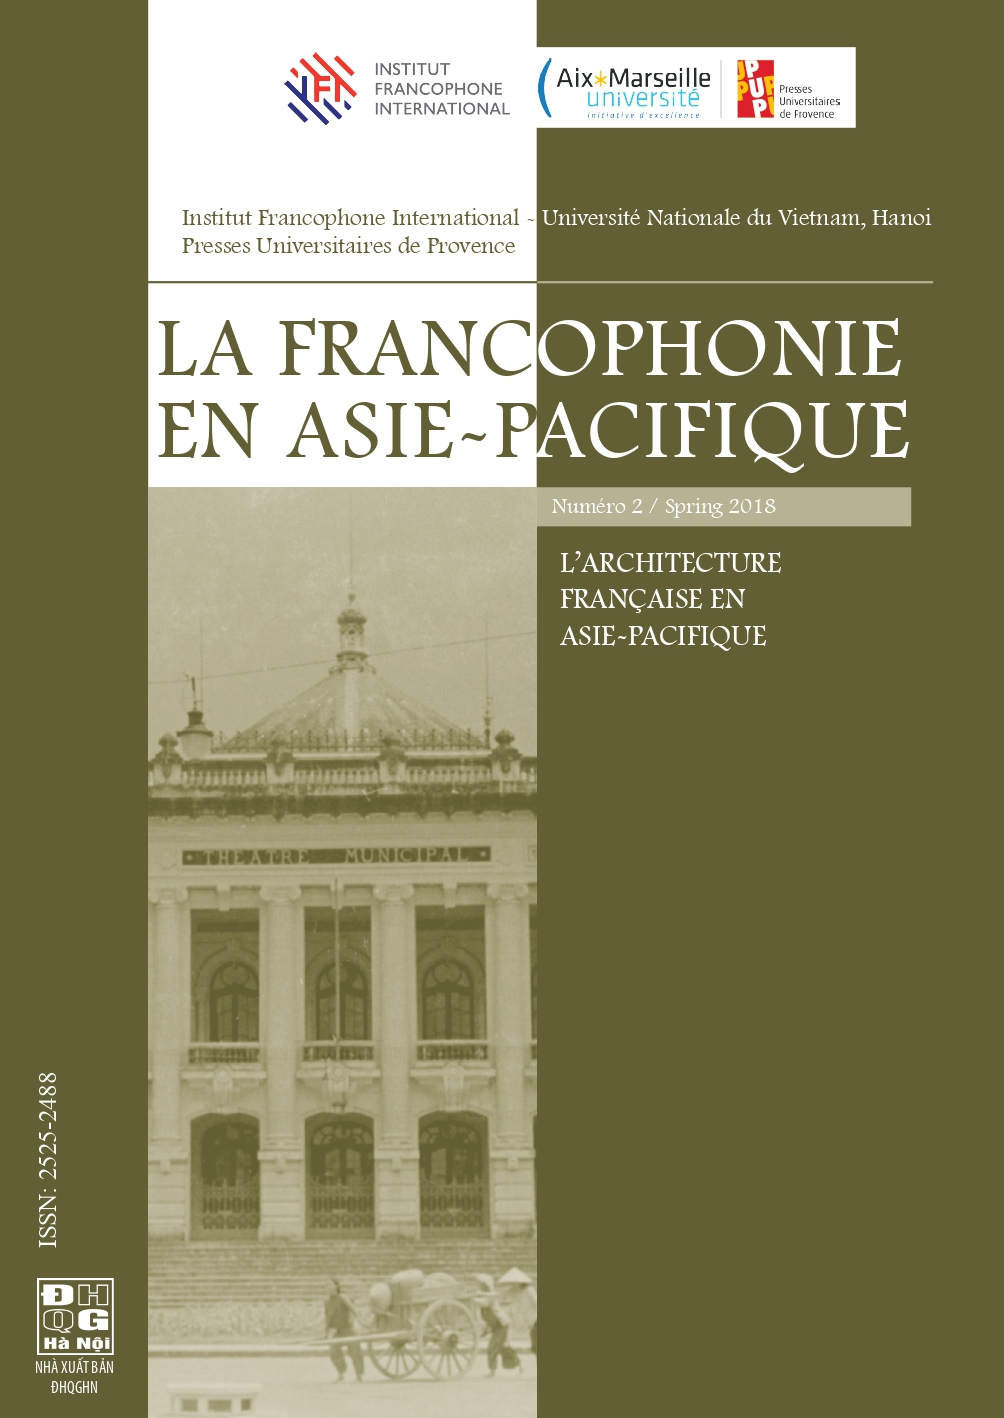 LA FRANCOPHONIE cover 2 page 0001